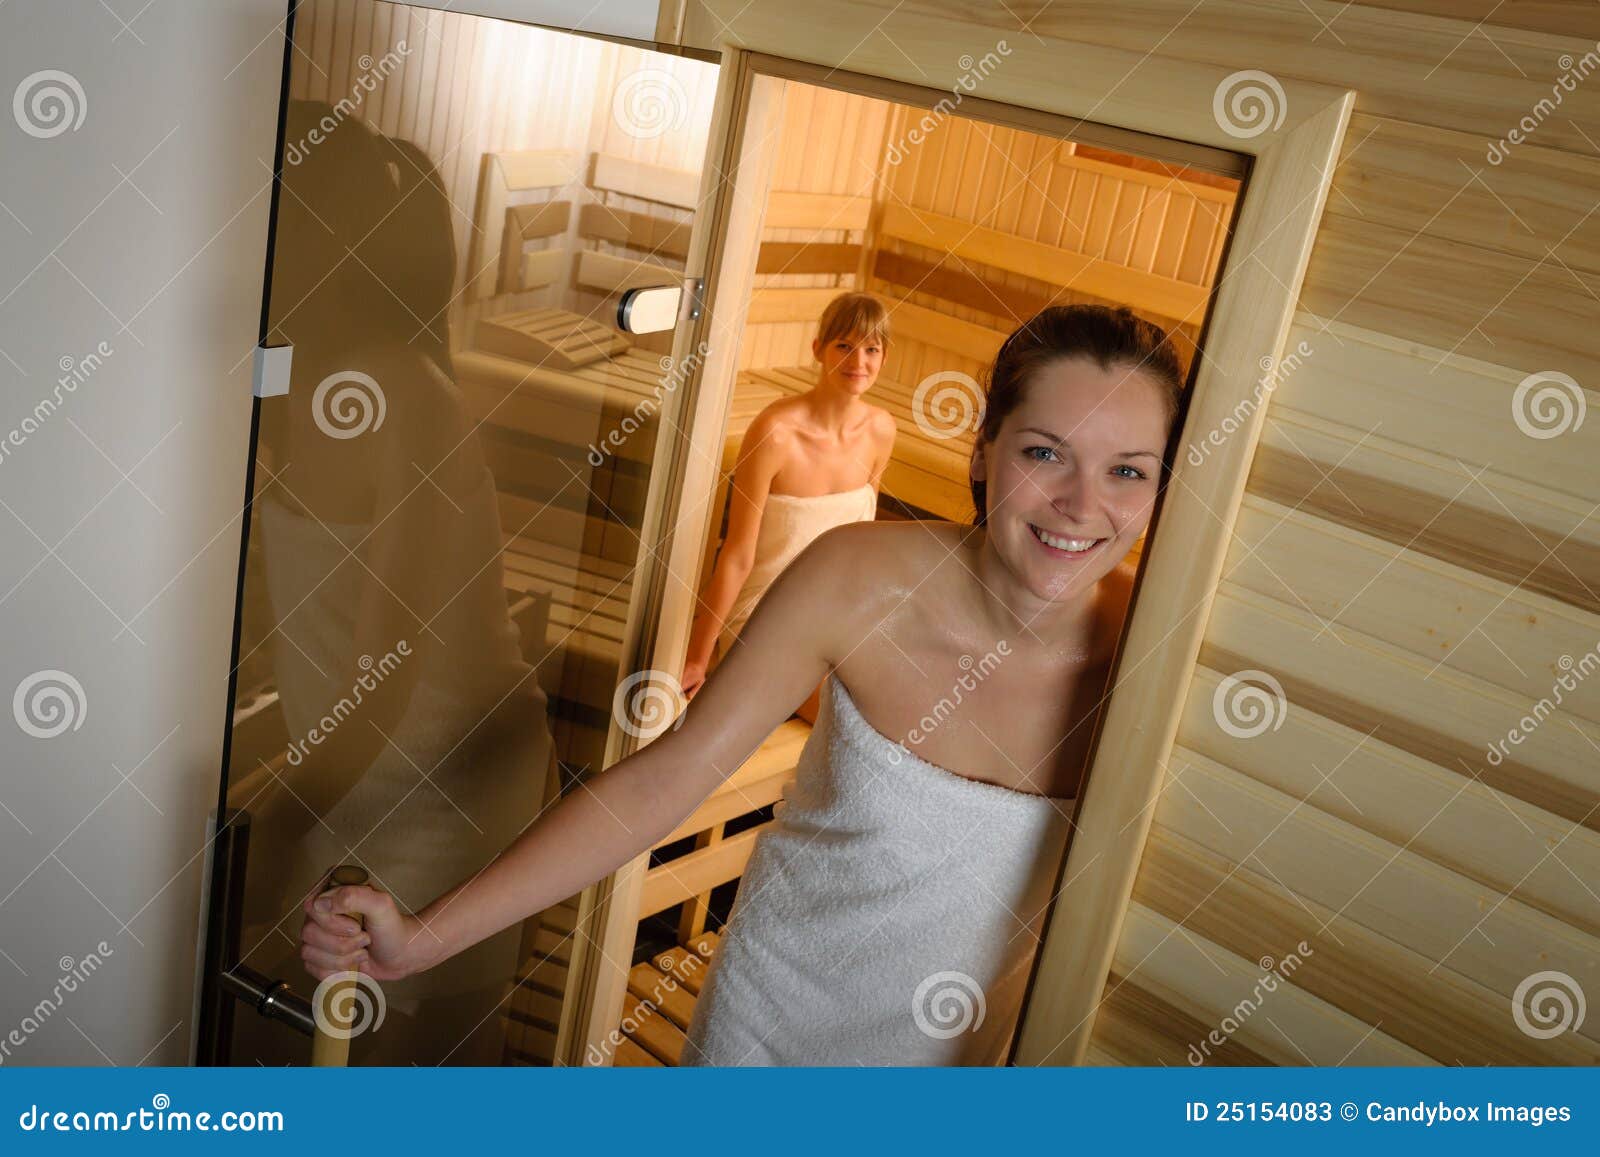 подсматривание за голыми в бане фото 66